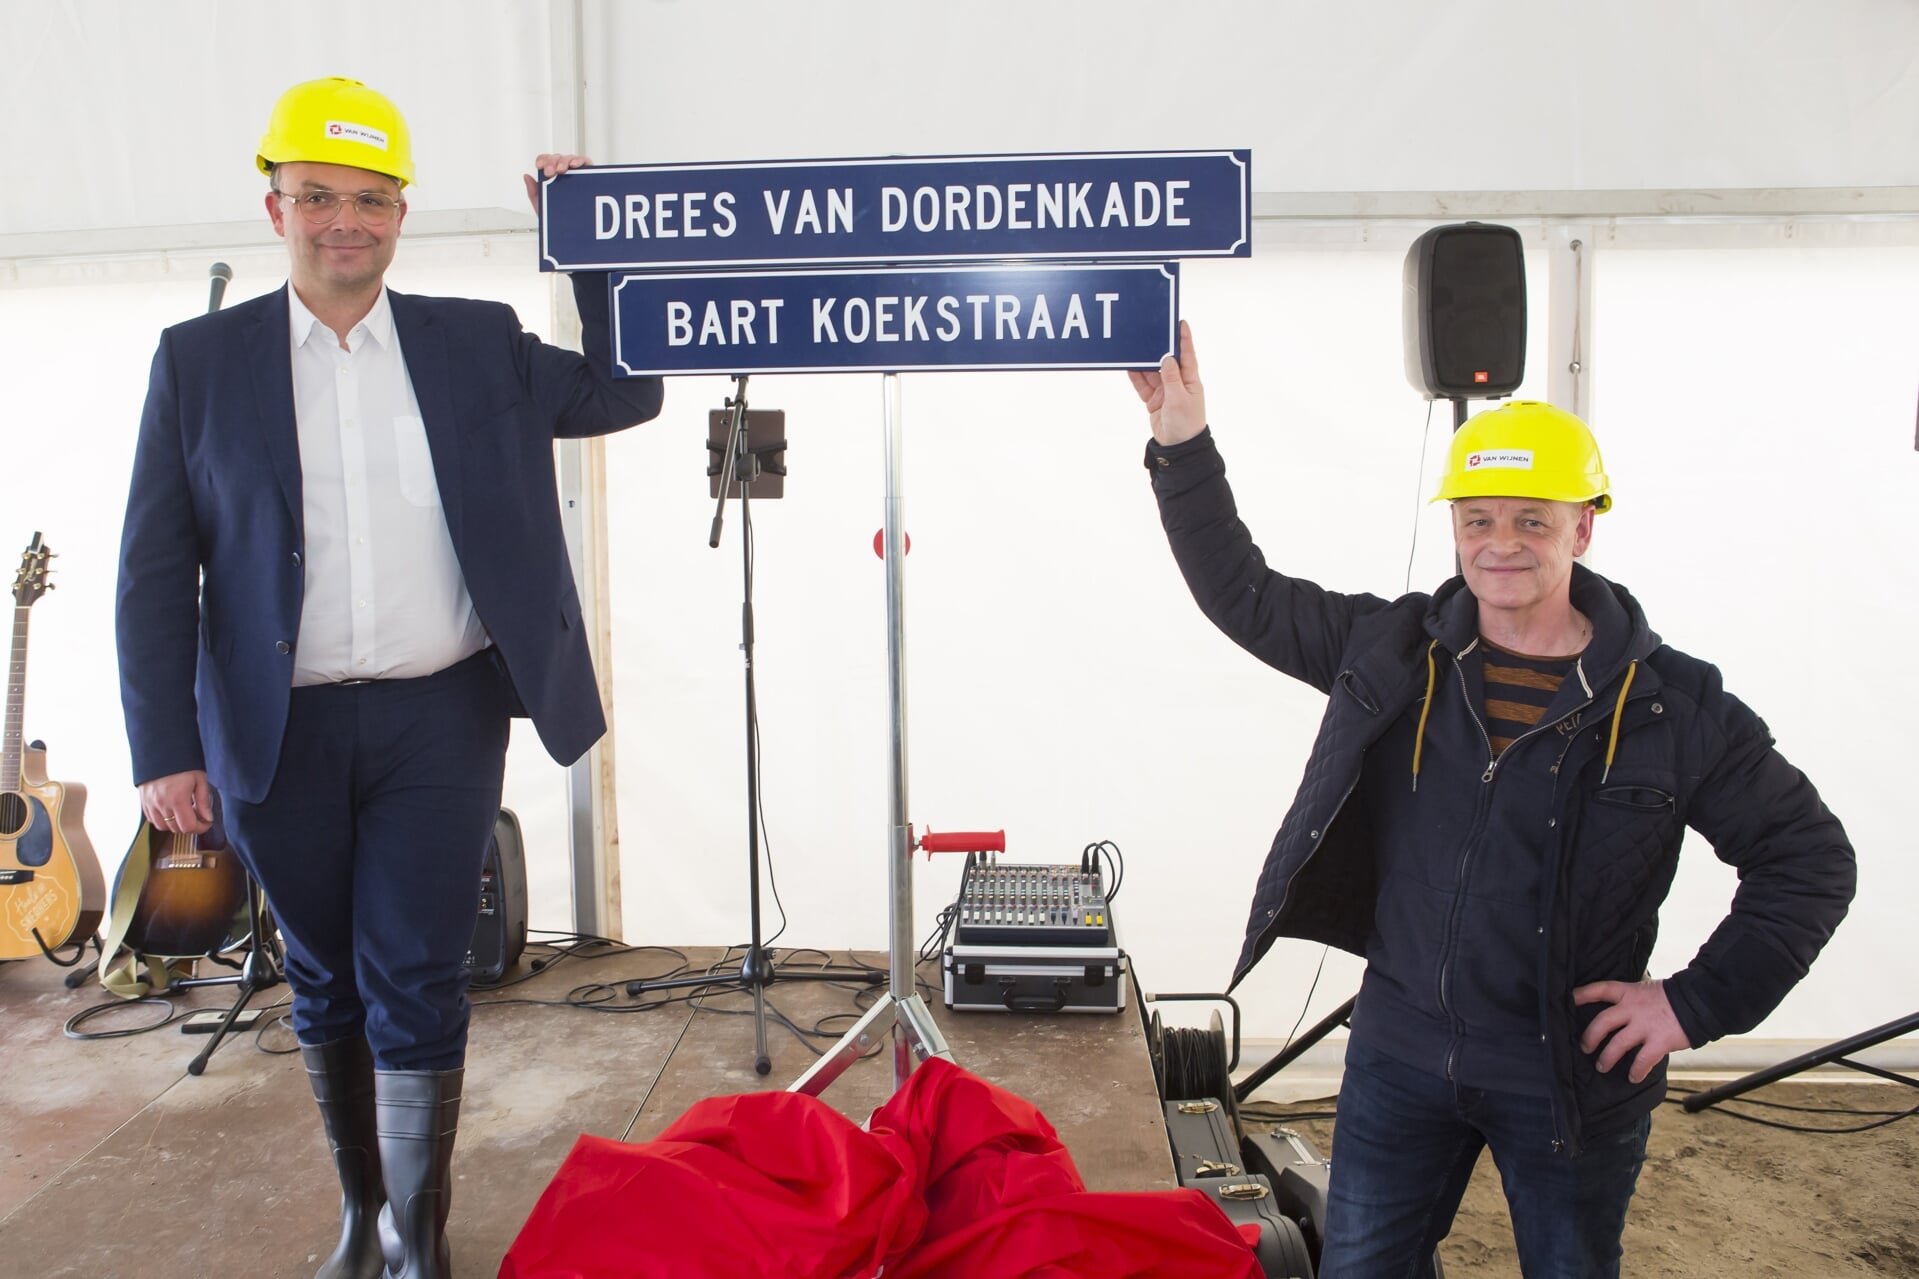 Wethouder Edwin Enklaar (links) en Herman Bruinink, familie van Drees van Dorden, (rechts) onthulden samen de twee straatnaamborden met de namen van Harderwijkse vissers.